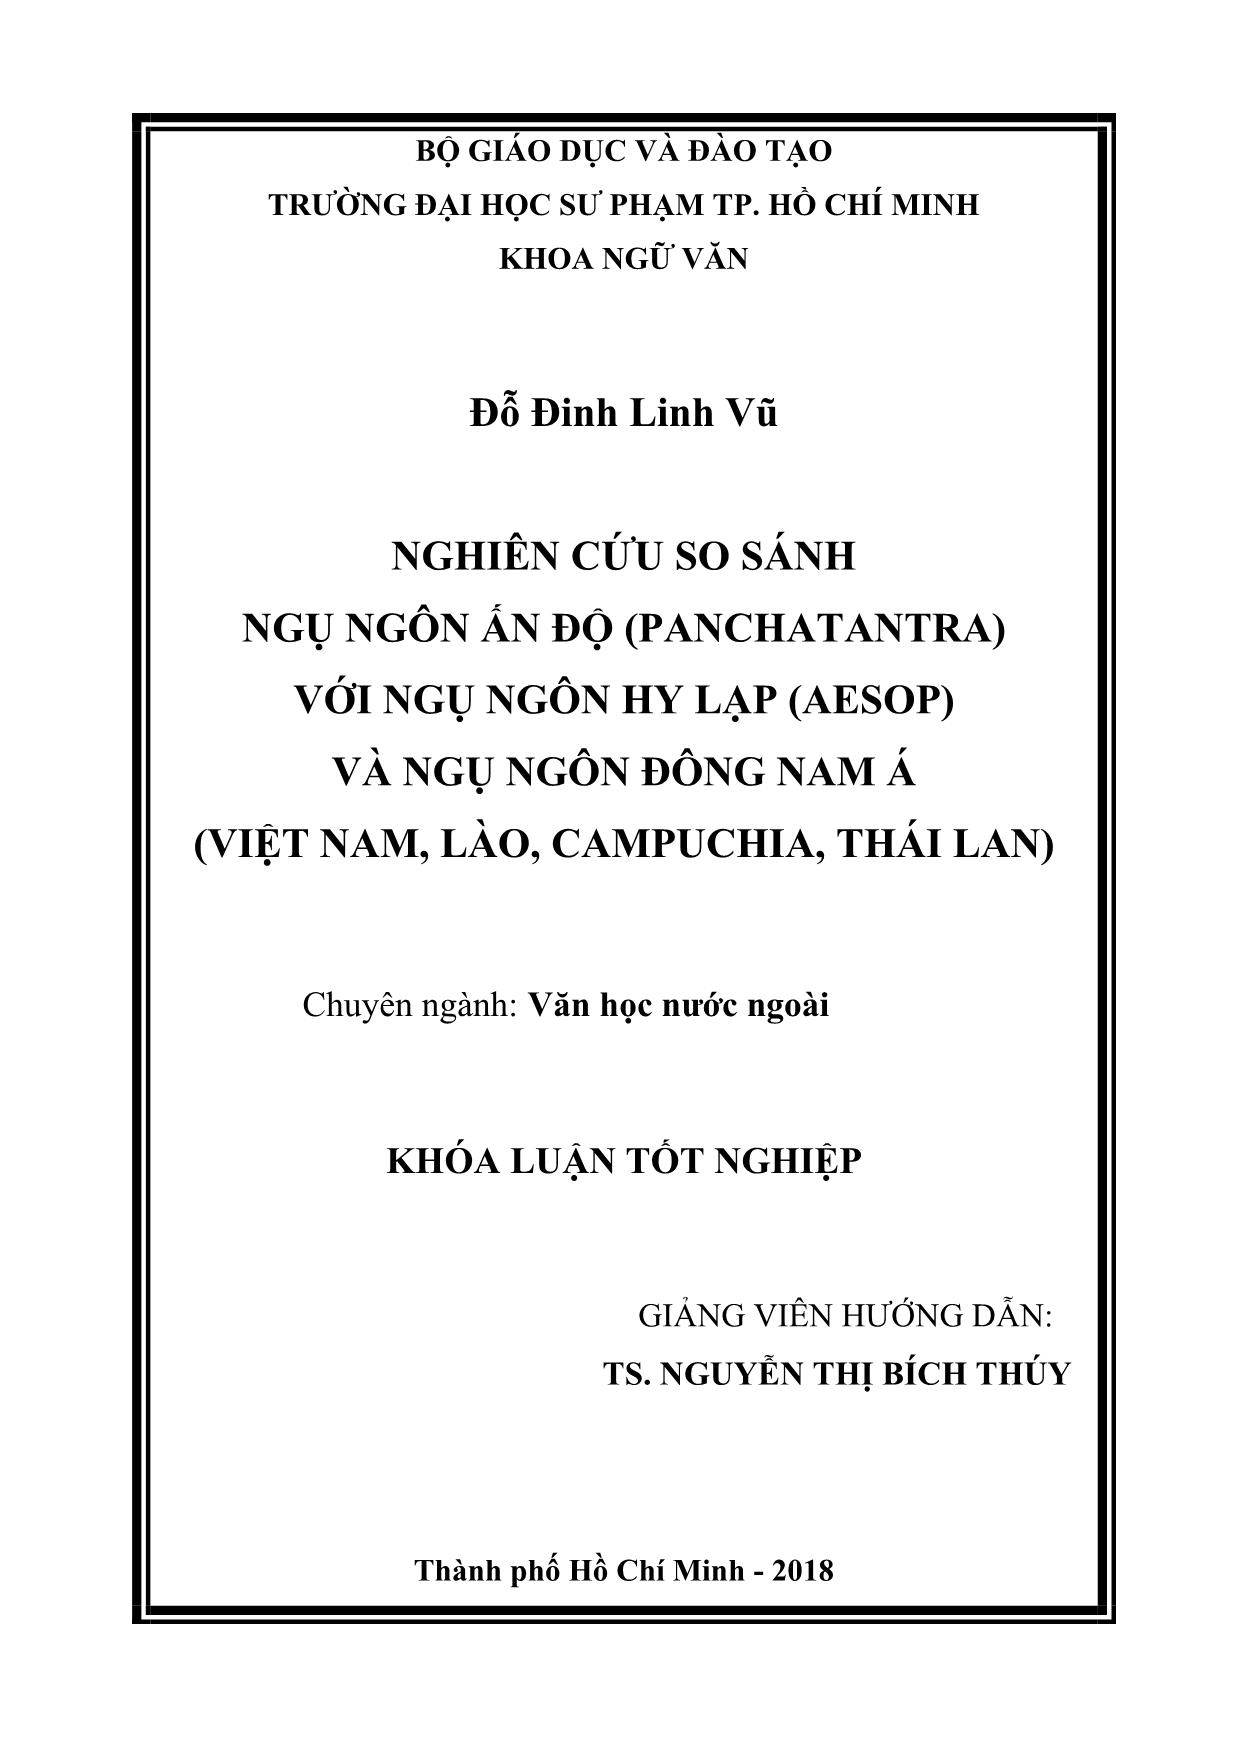 Nghiên cứu so sánh ngụ ngôn Ấn Độ (Panchatantra) với ngụ ngôn Hy Lạp (Aesop) và ngụ ngôn Đông Nam Á (Việt Nam, Lào, Campuchia, Thái Lan) trang 2